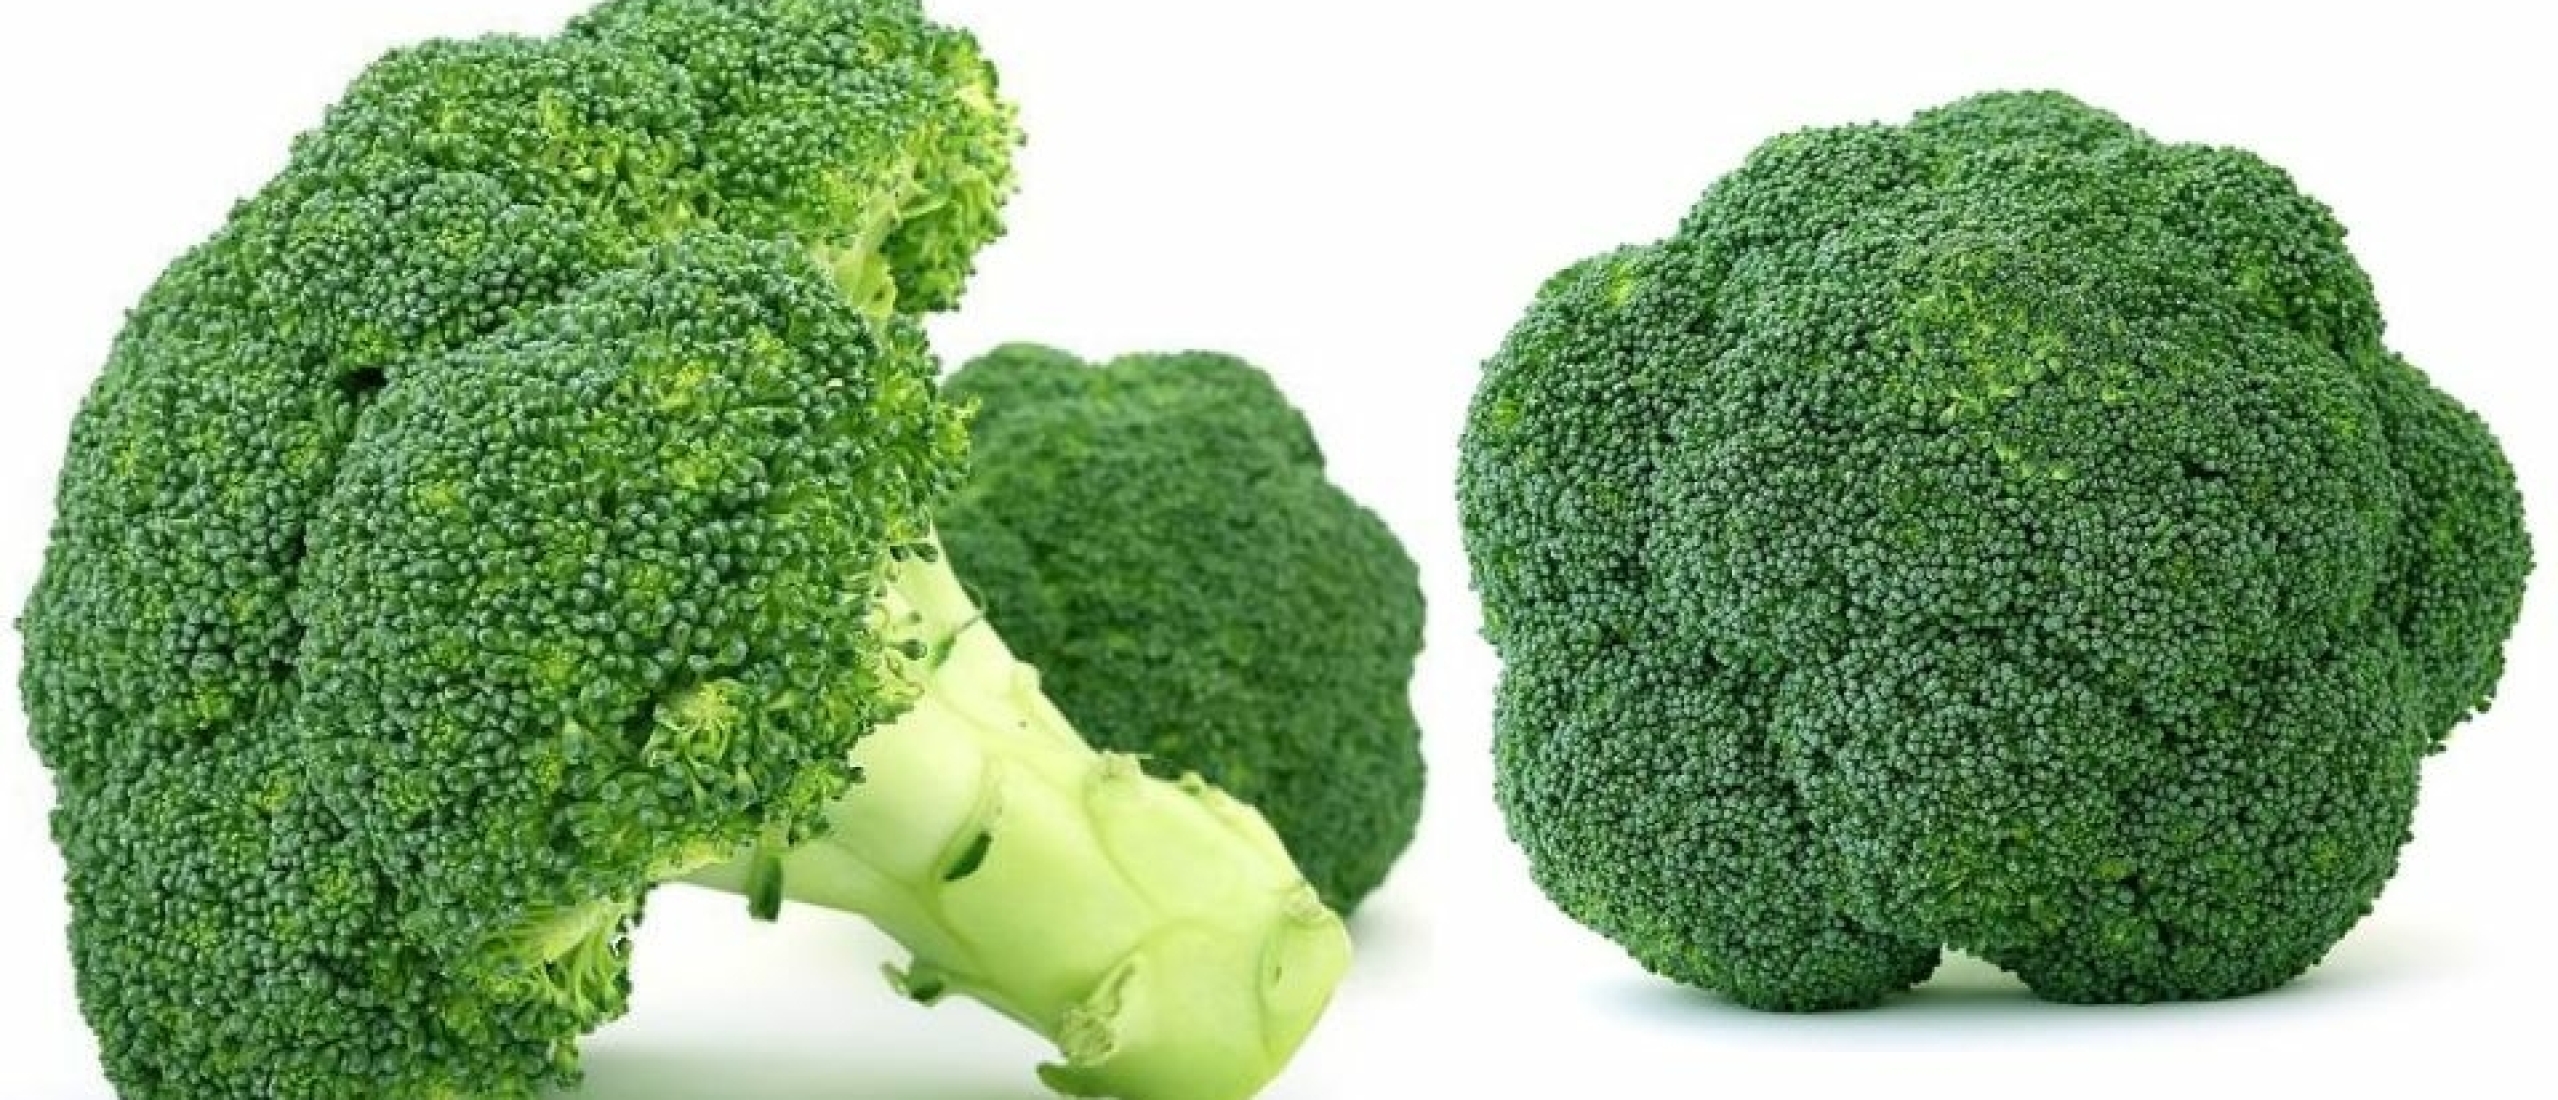 Broccoli is gezond en populair